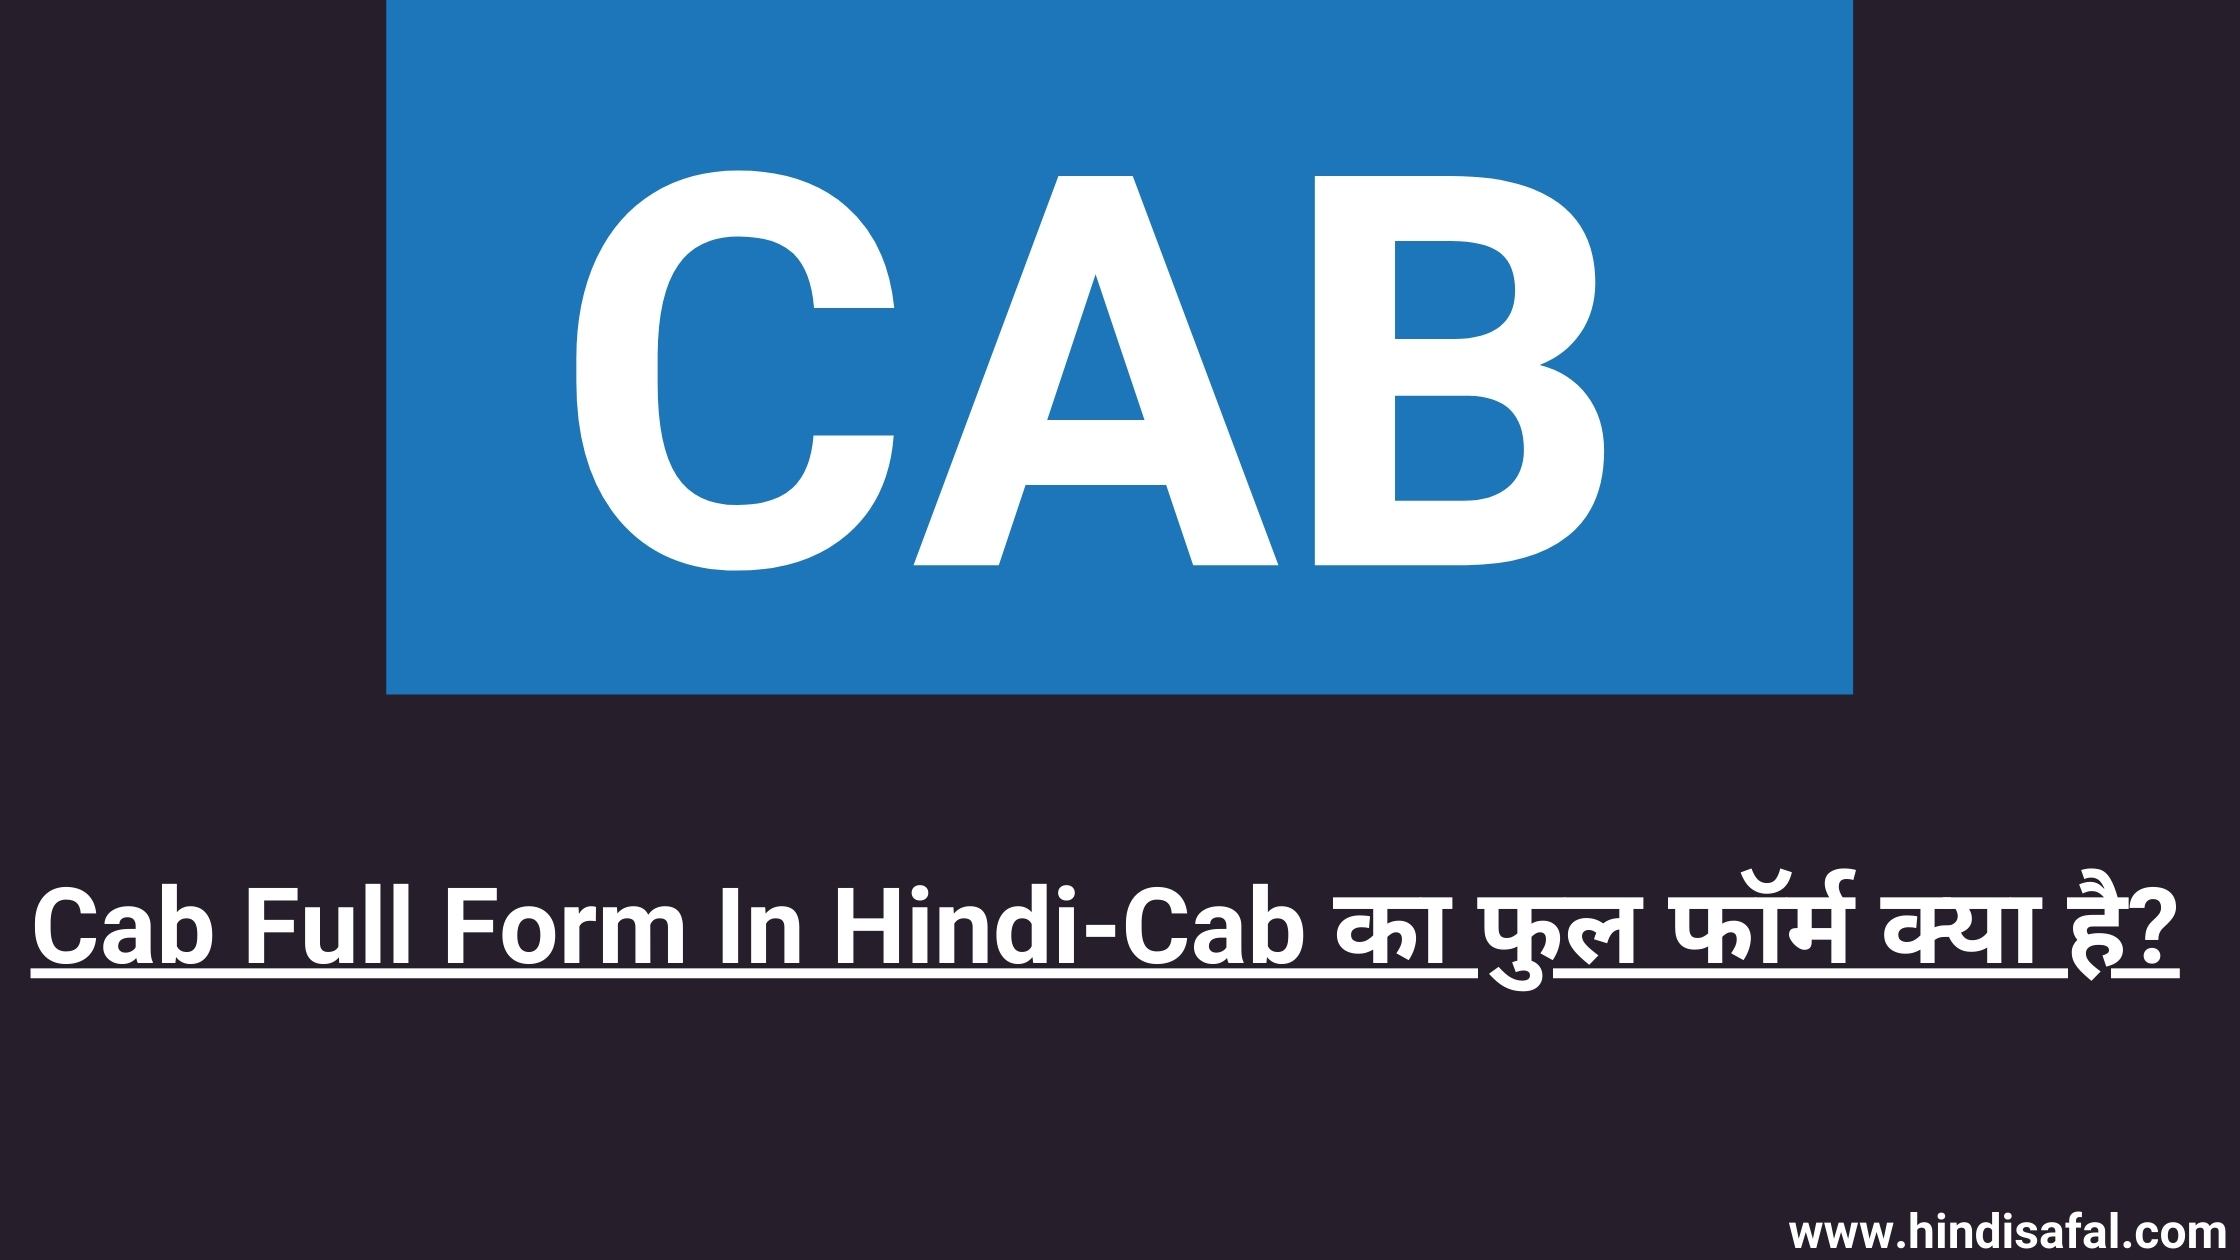 Cab Full Form In Hindi-Cab का फुल फॉर्म क्या है?